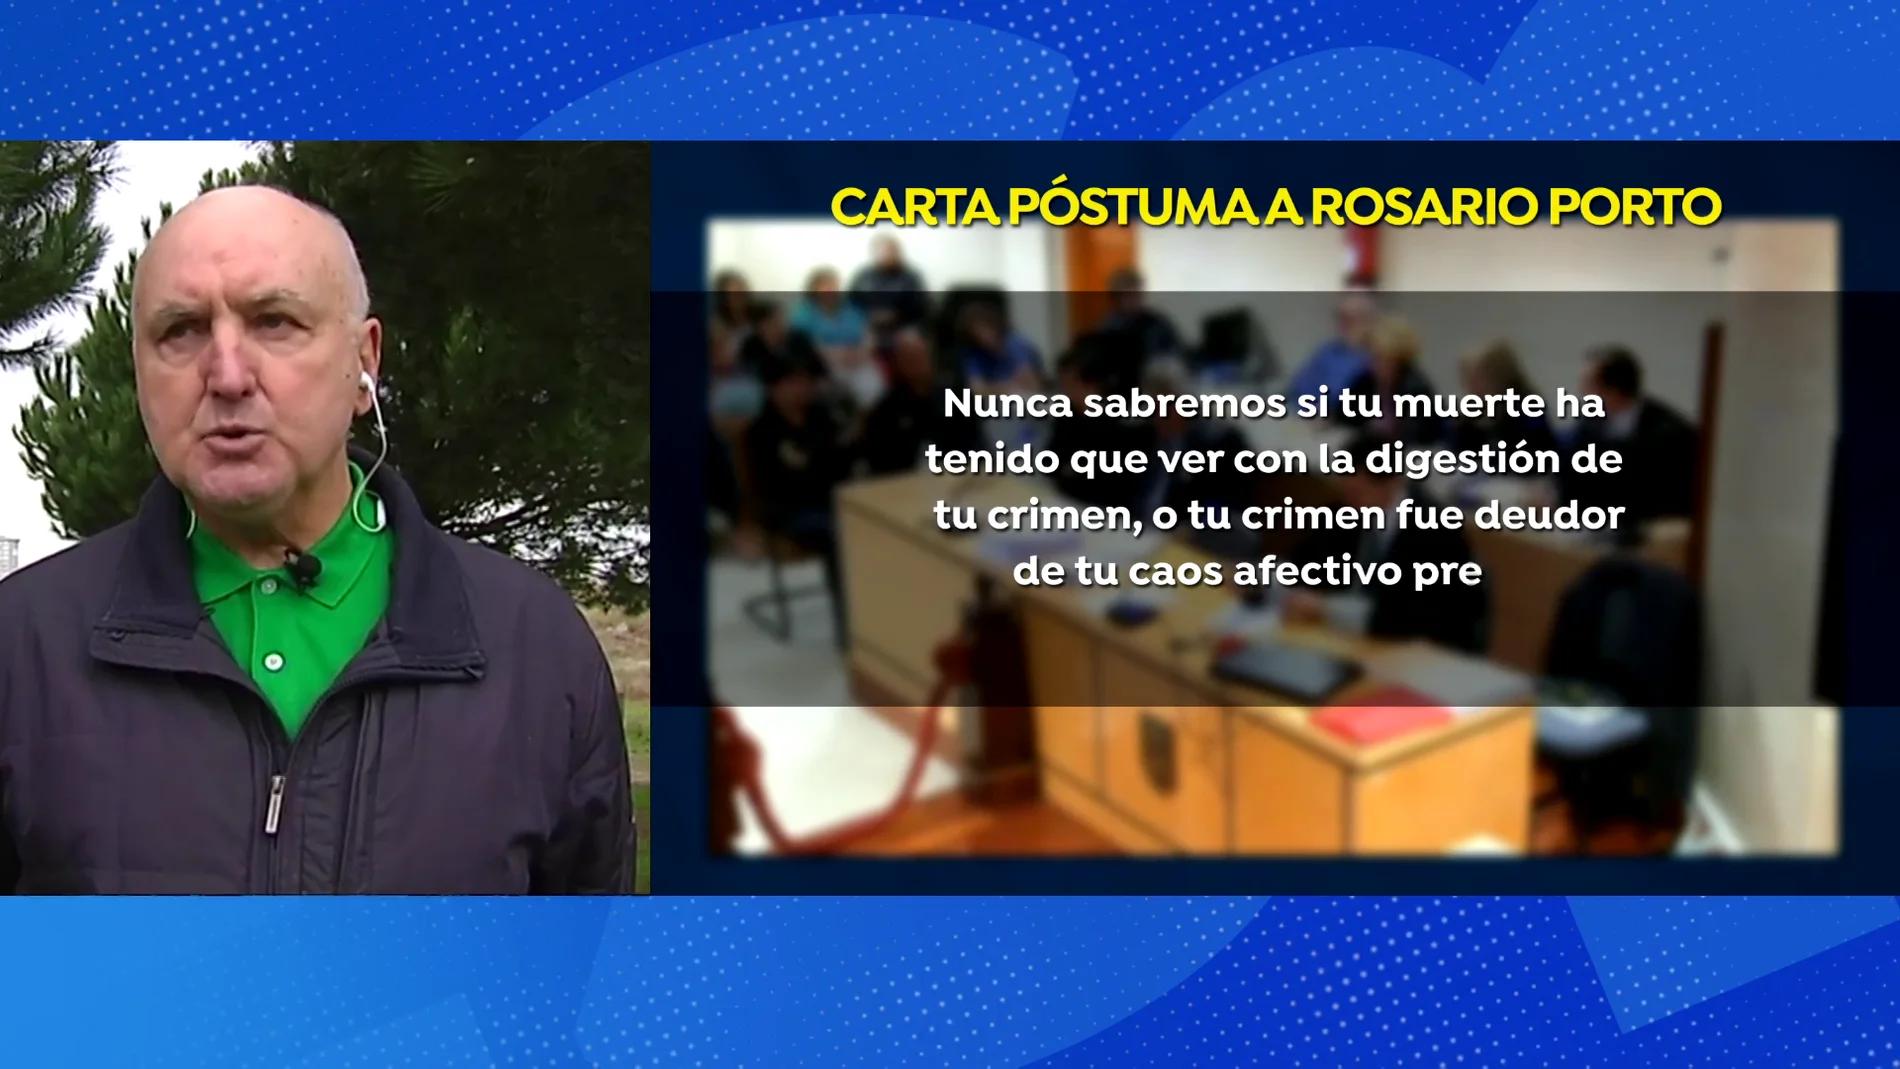 Experto en psicología criminal explica el perfil de Rosario Porto